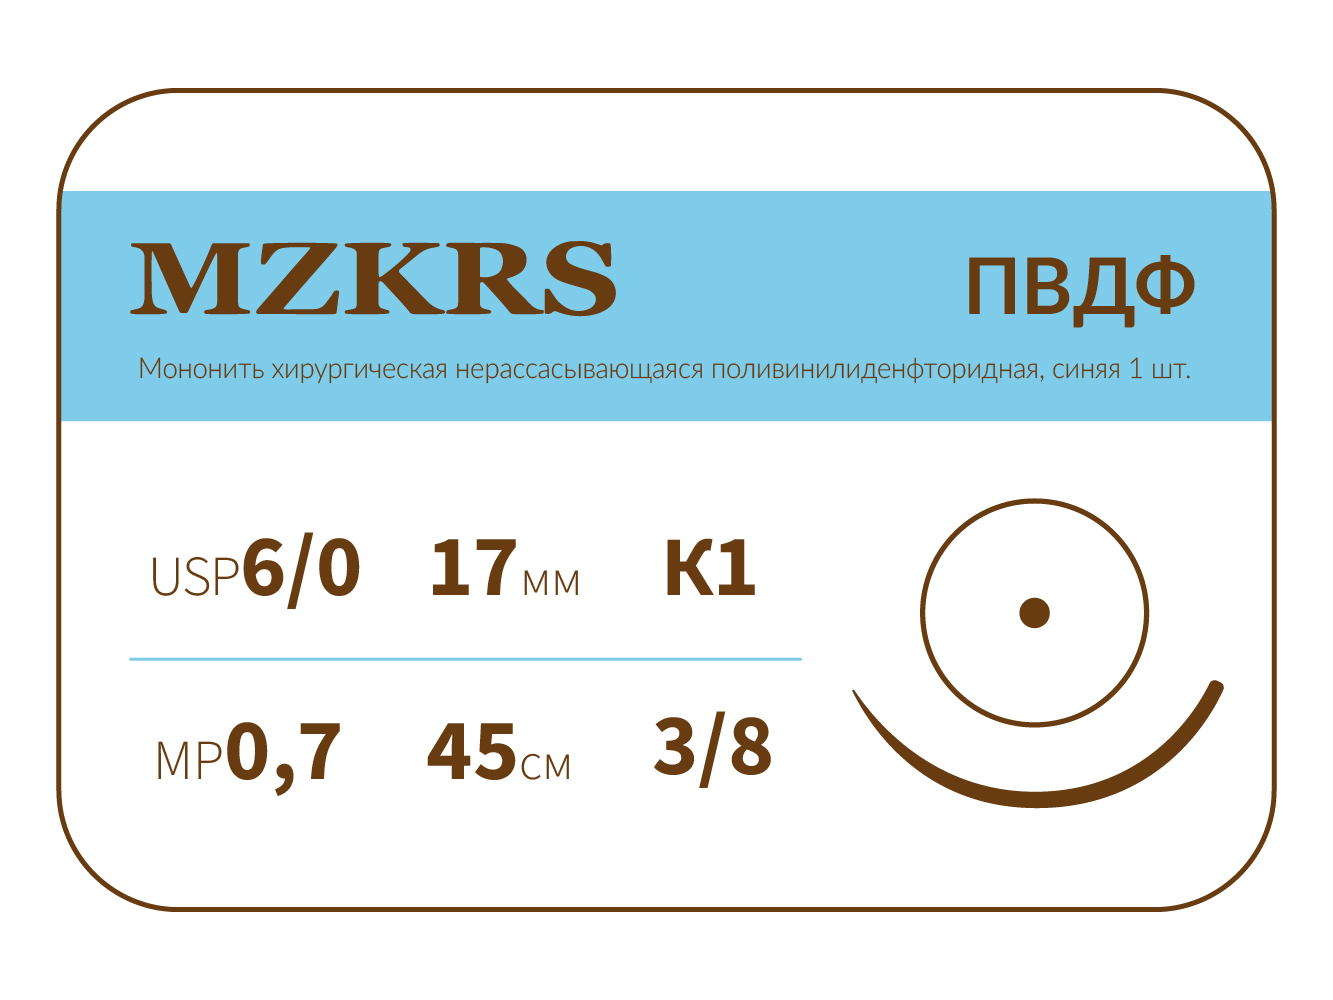 1738К1-Premium-6/0 (0.7)45 ПВДФ  хирургическая нить поливинилиденфторидная, MZKRS (Россия)